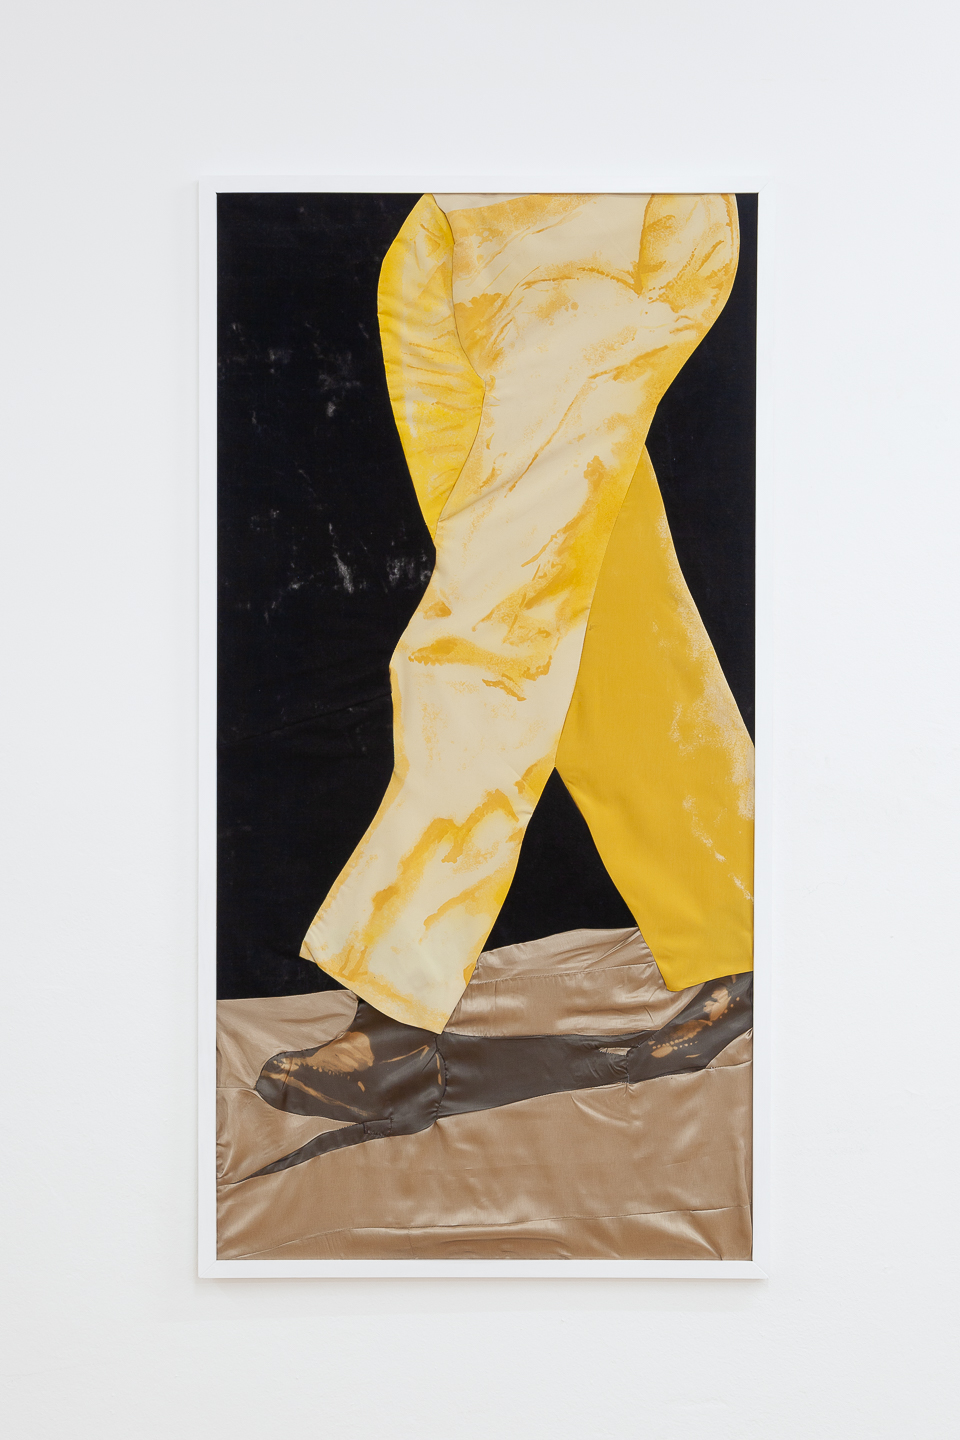 Ellie de Verdier, Trouser, 2020, bleach on textile, 120x60cm